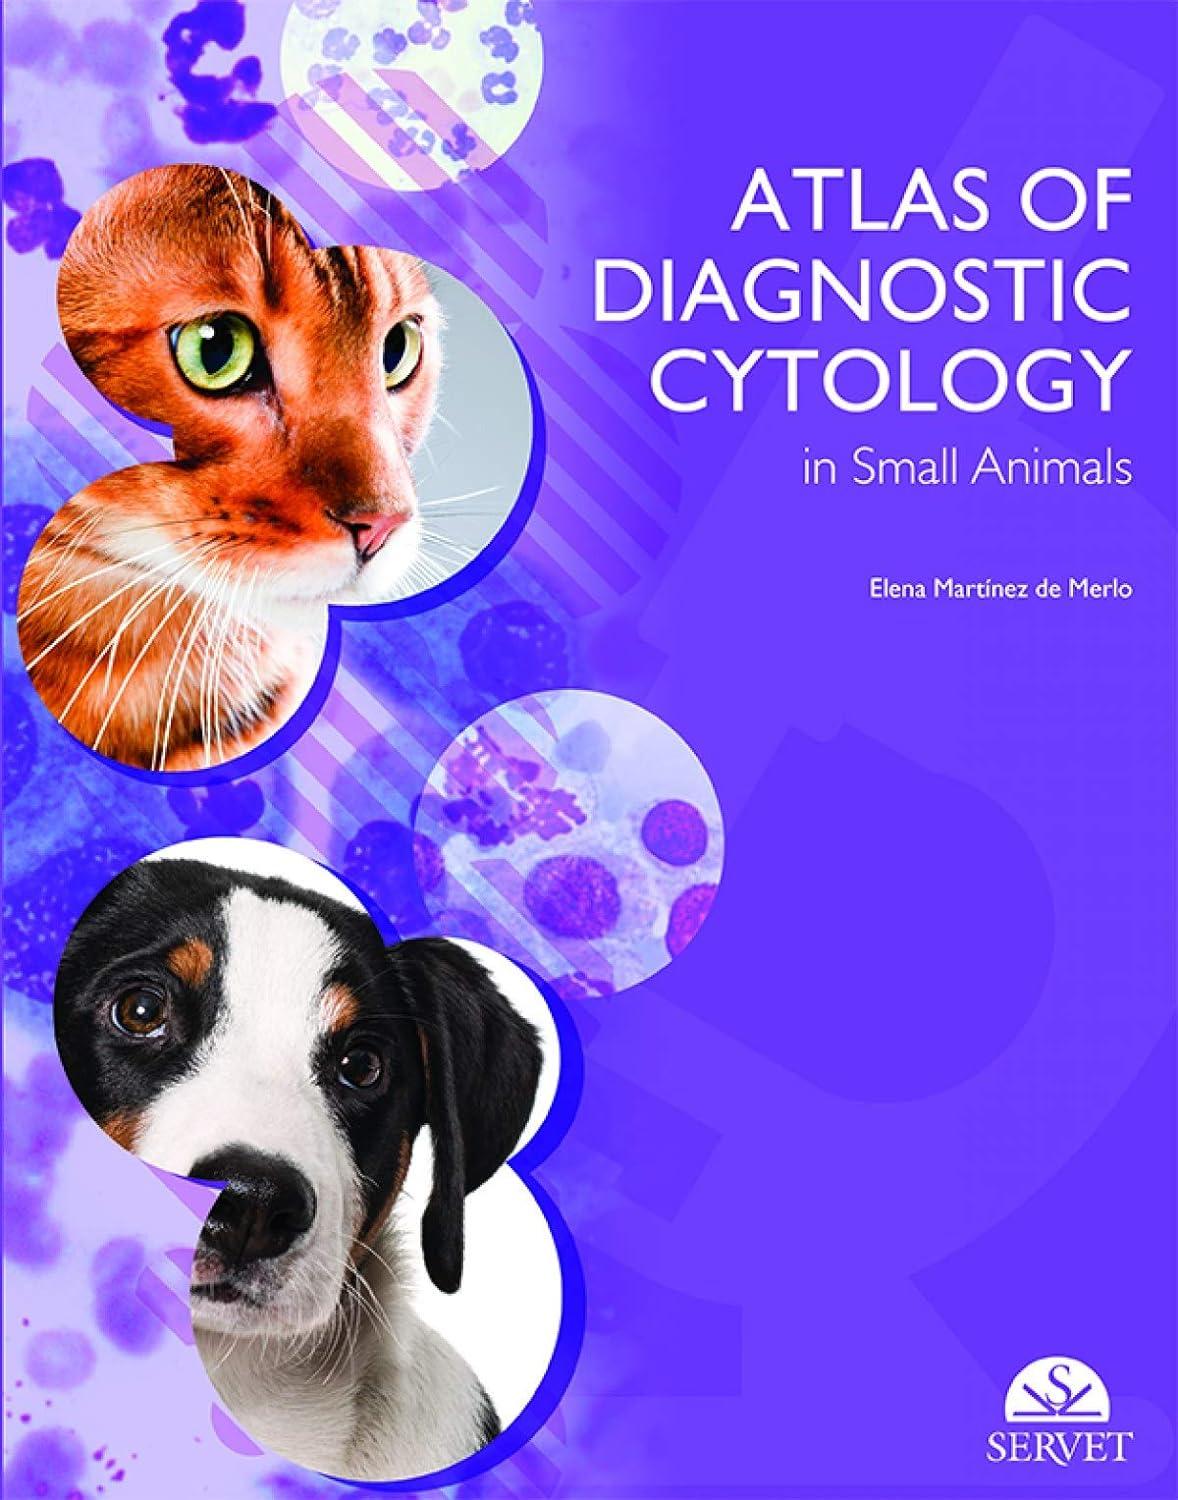 atlas of diagnostic cytology in small animals 1st edition elena martínez de merlo, owen howard 8417640614,